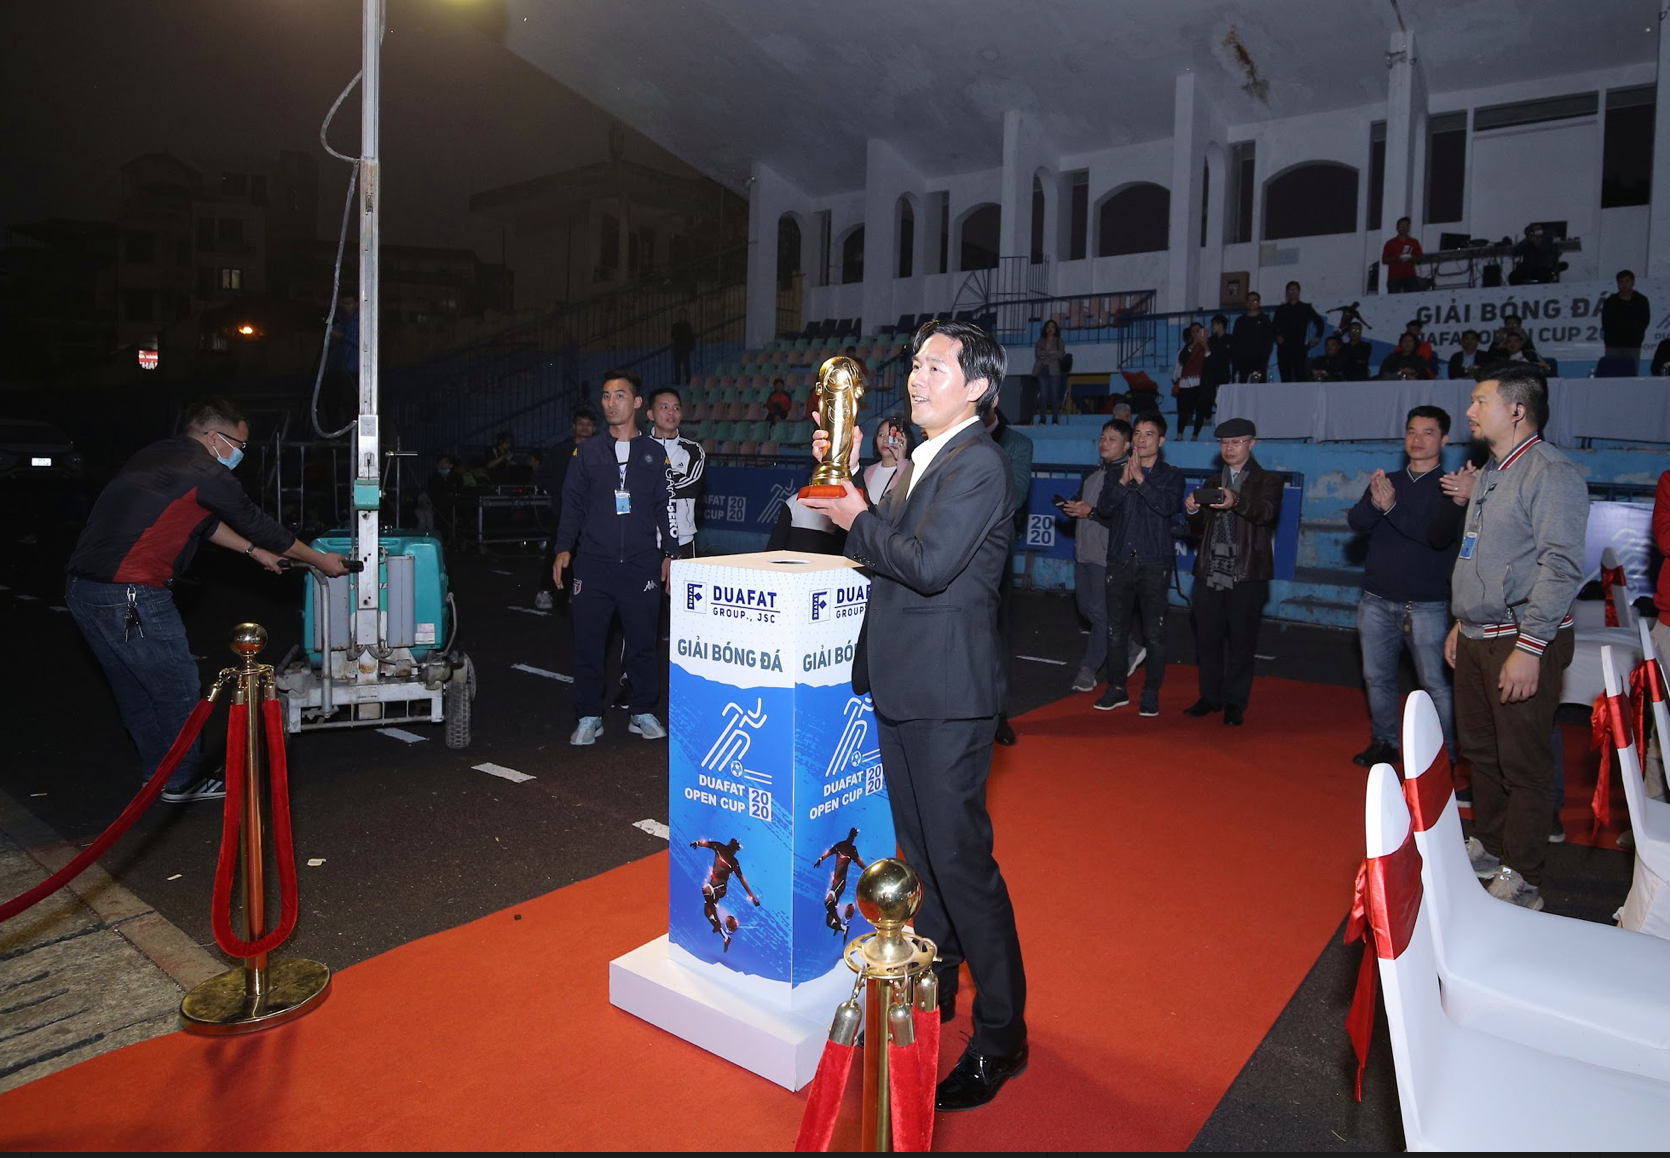 Cúp vàng danh giá của Duafat Open được trao cho Xi măng Xuân Thành 